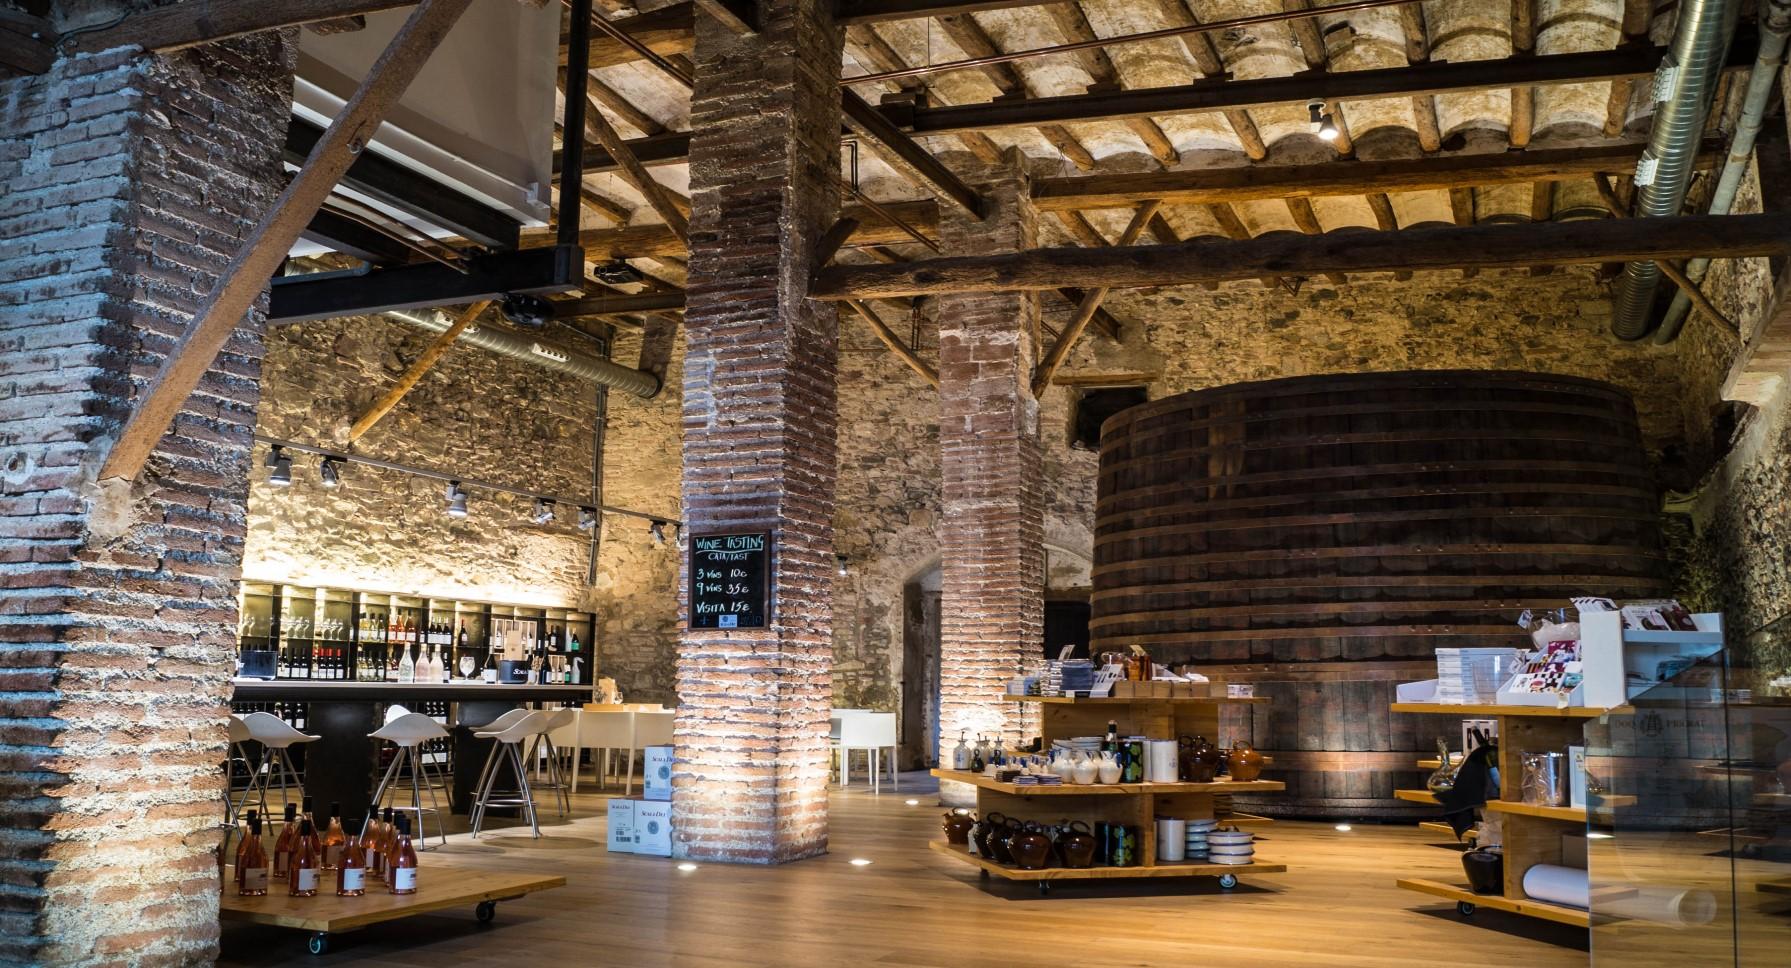 Scala Dei winery_interior sala